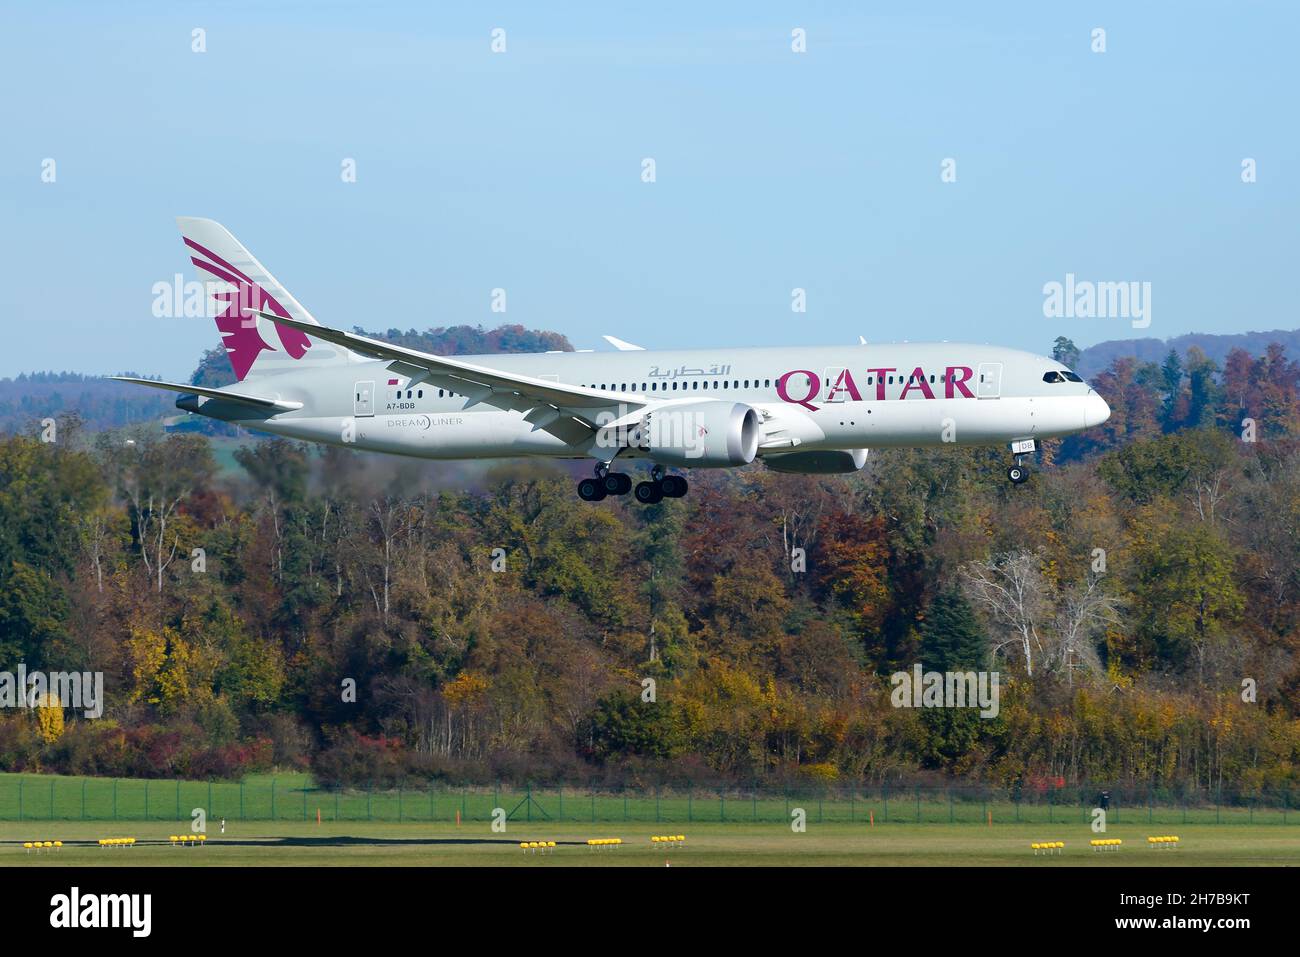 Qatar Airways Boeing 787-8 aircraft landing at Zurich inbound from Doha, Qatar. Qatar B787 Dreamliner airplane flying. Stock Photo